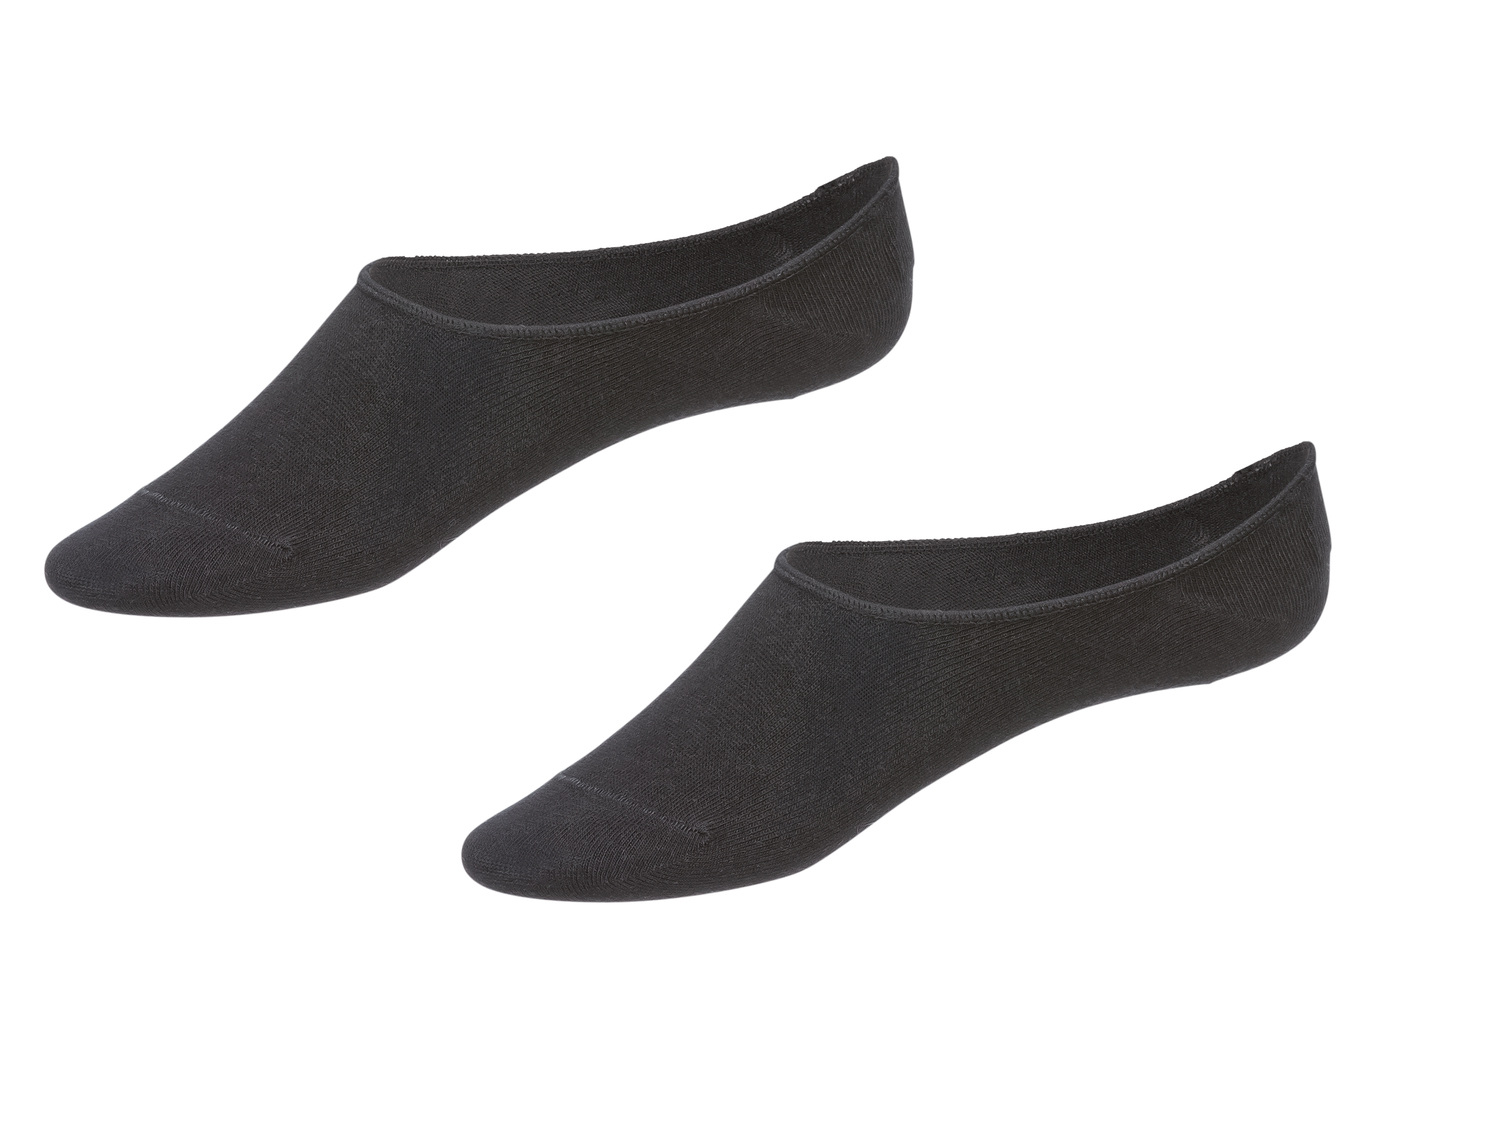 Protège-pieds en coton femme , le prix 1.99 € 
- Du 35/38 au 39/42 selon modèle
- ...